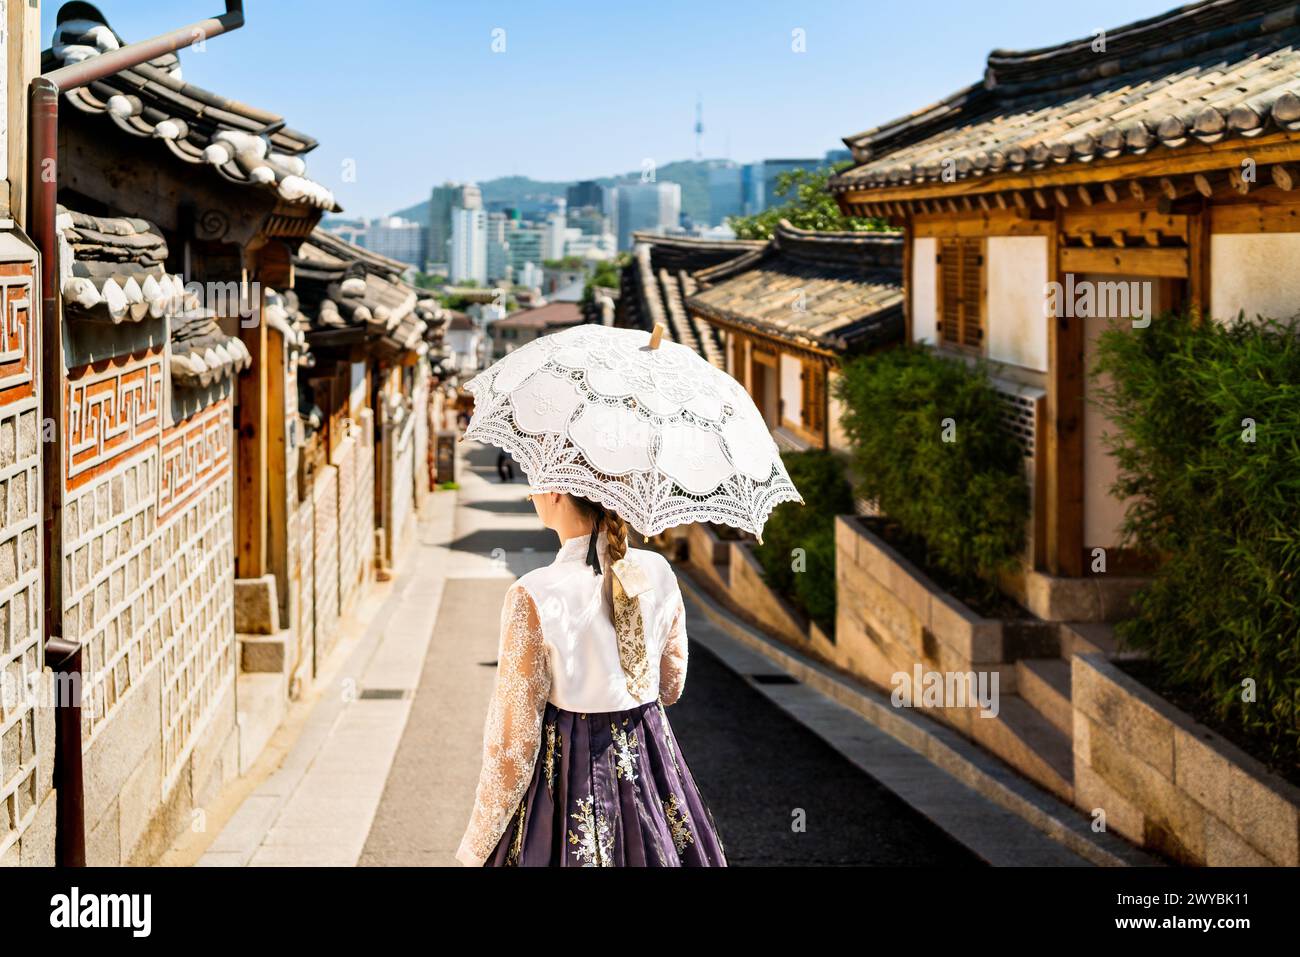 Südkorea, Seoul. Frau in Hanbok im Dorf Bukchon Hanok. Mädchen in traditionellem Kleid und Kostüm. Koreanische Tradition. Skyline der Stadt. Stockfoto